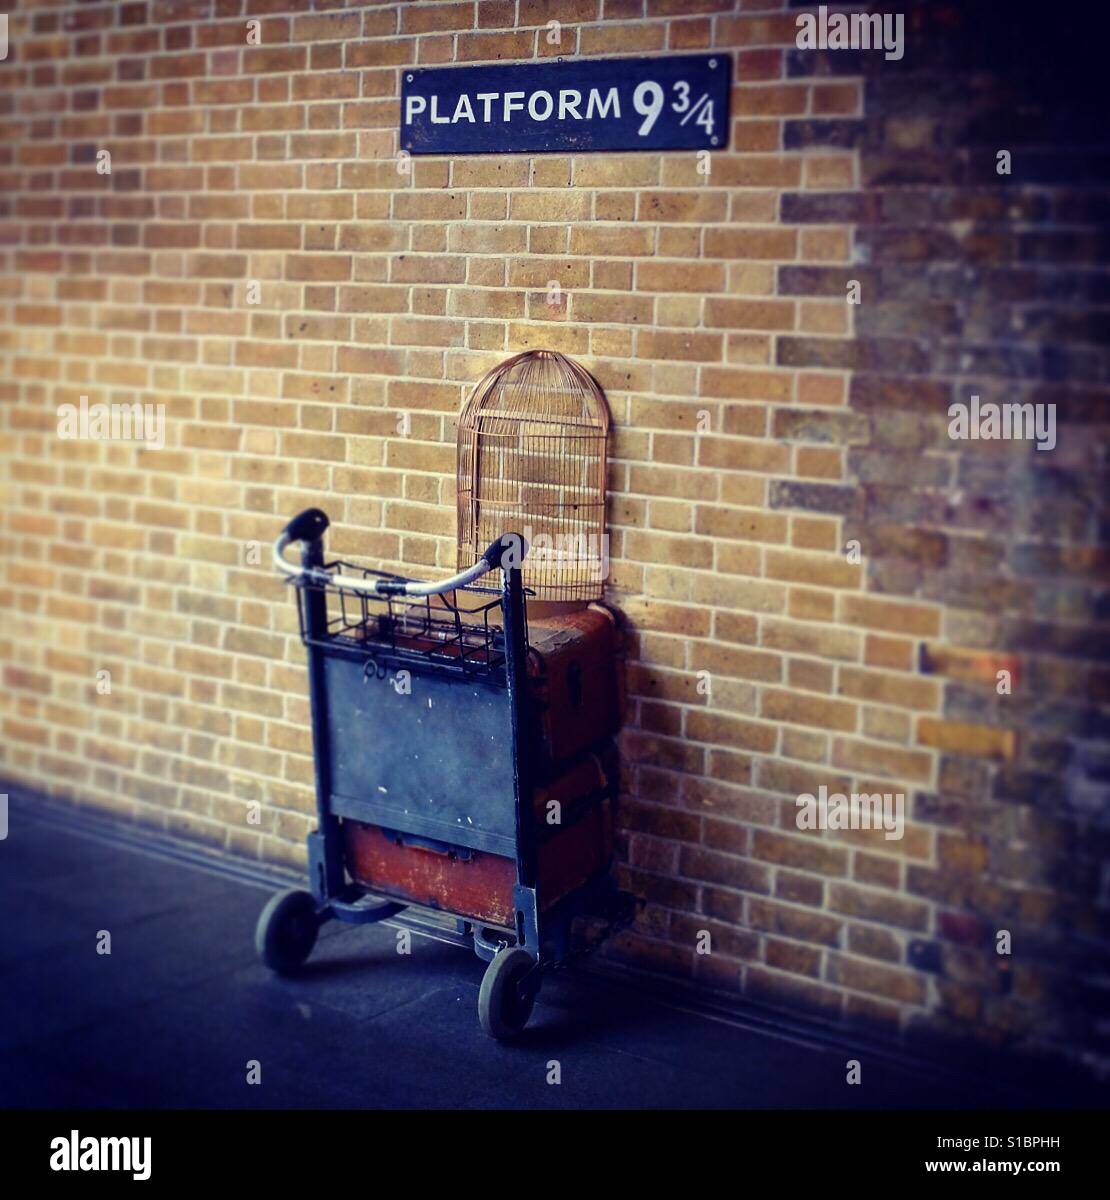 Top 94+ Images harry potter train station platform 9 3/4 Excellent